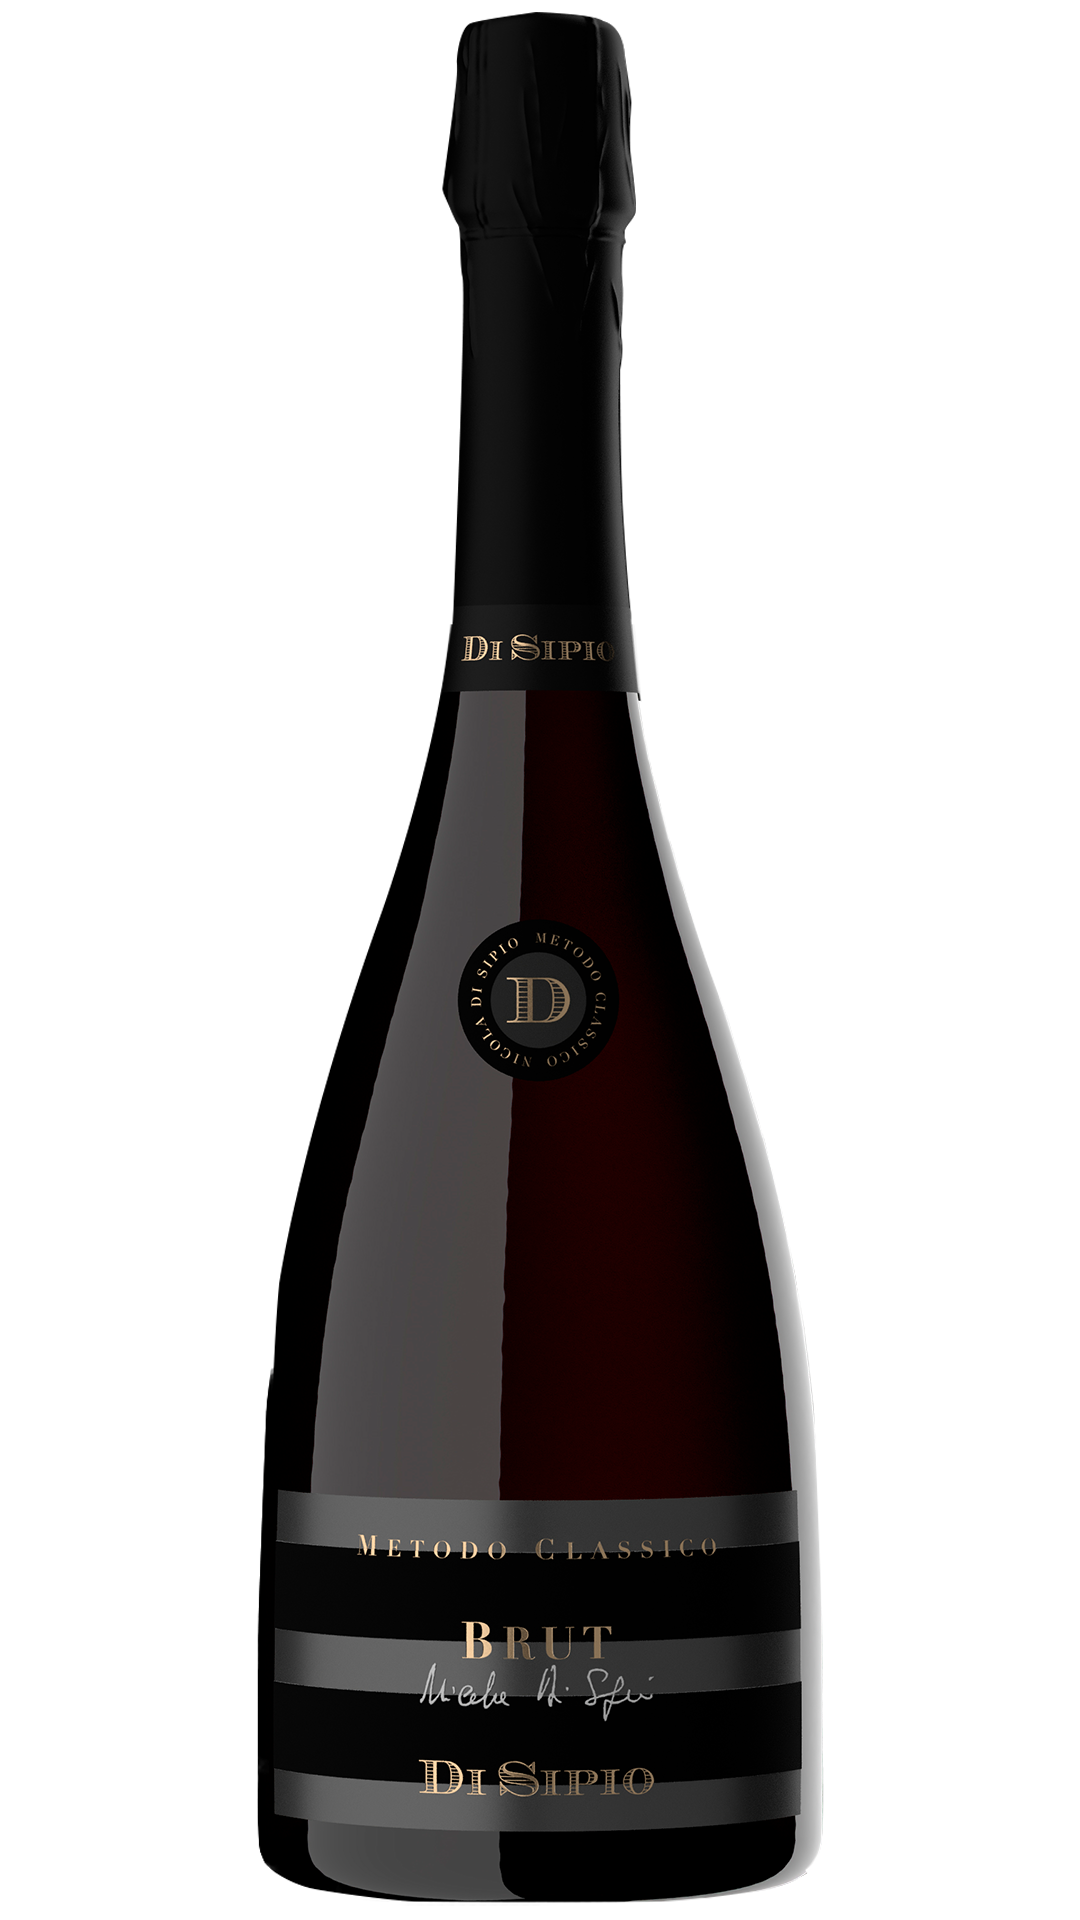 Vino spumante di straordinaria brillantezza ottenuto da uve Chardonnay e Pinot Nero. Il suo perlage, fine e persistente, si ottiene con almeno 36 mesi di permanenza in bottiglia sui lieviti di seconda fermentazione.